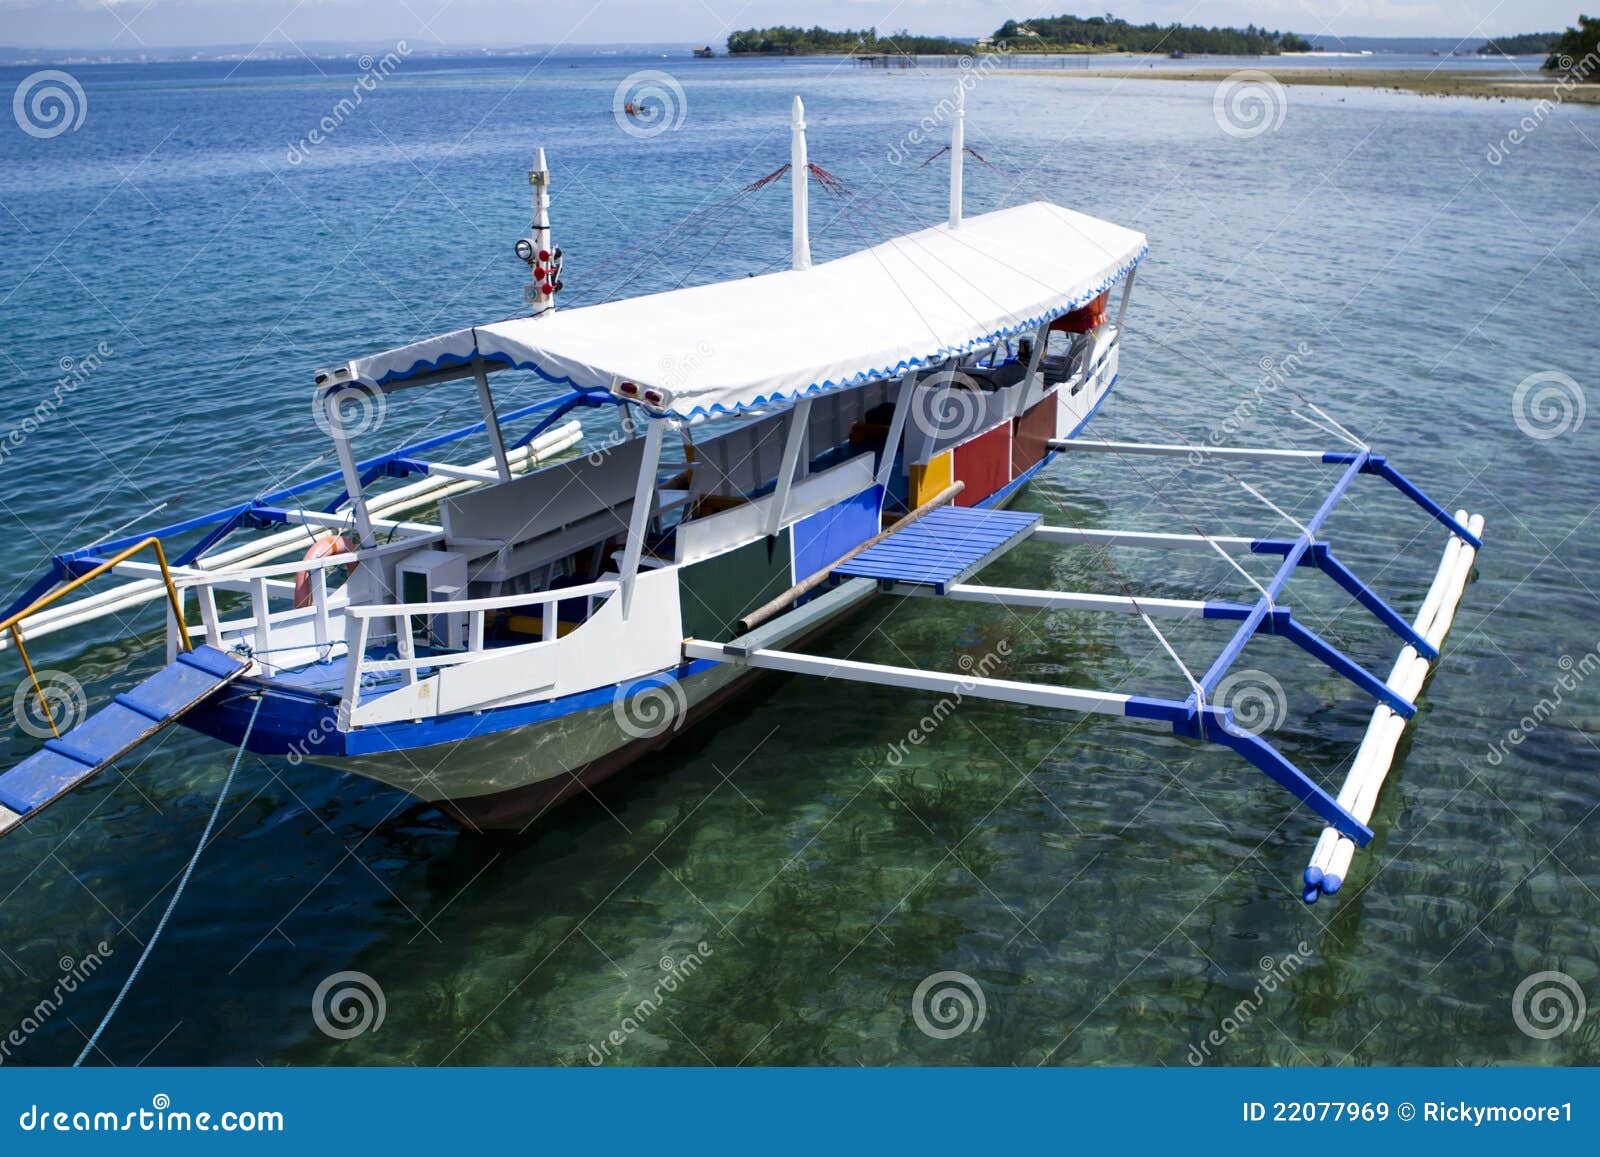 Philippine Bangka Boat Royalty Free Stock Images - Image ...